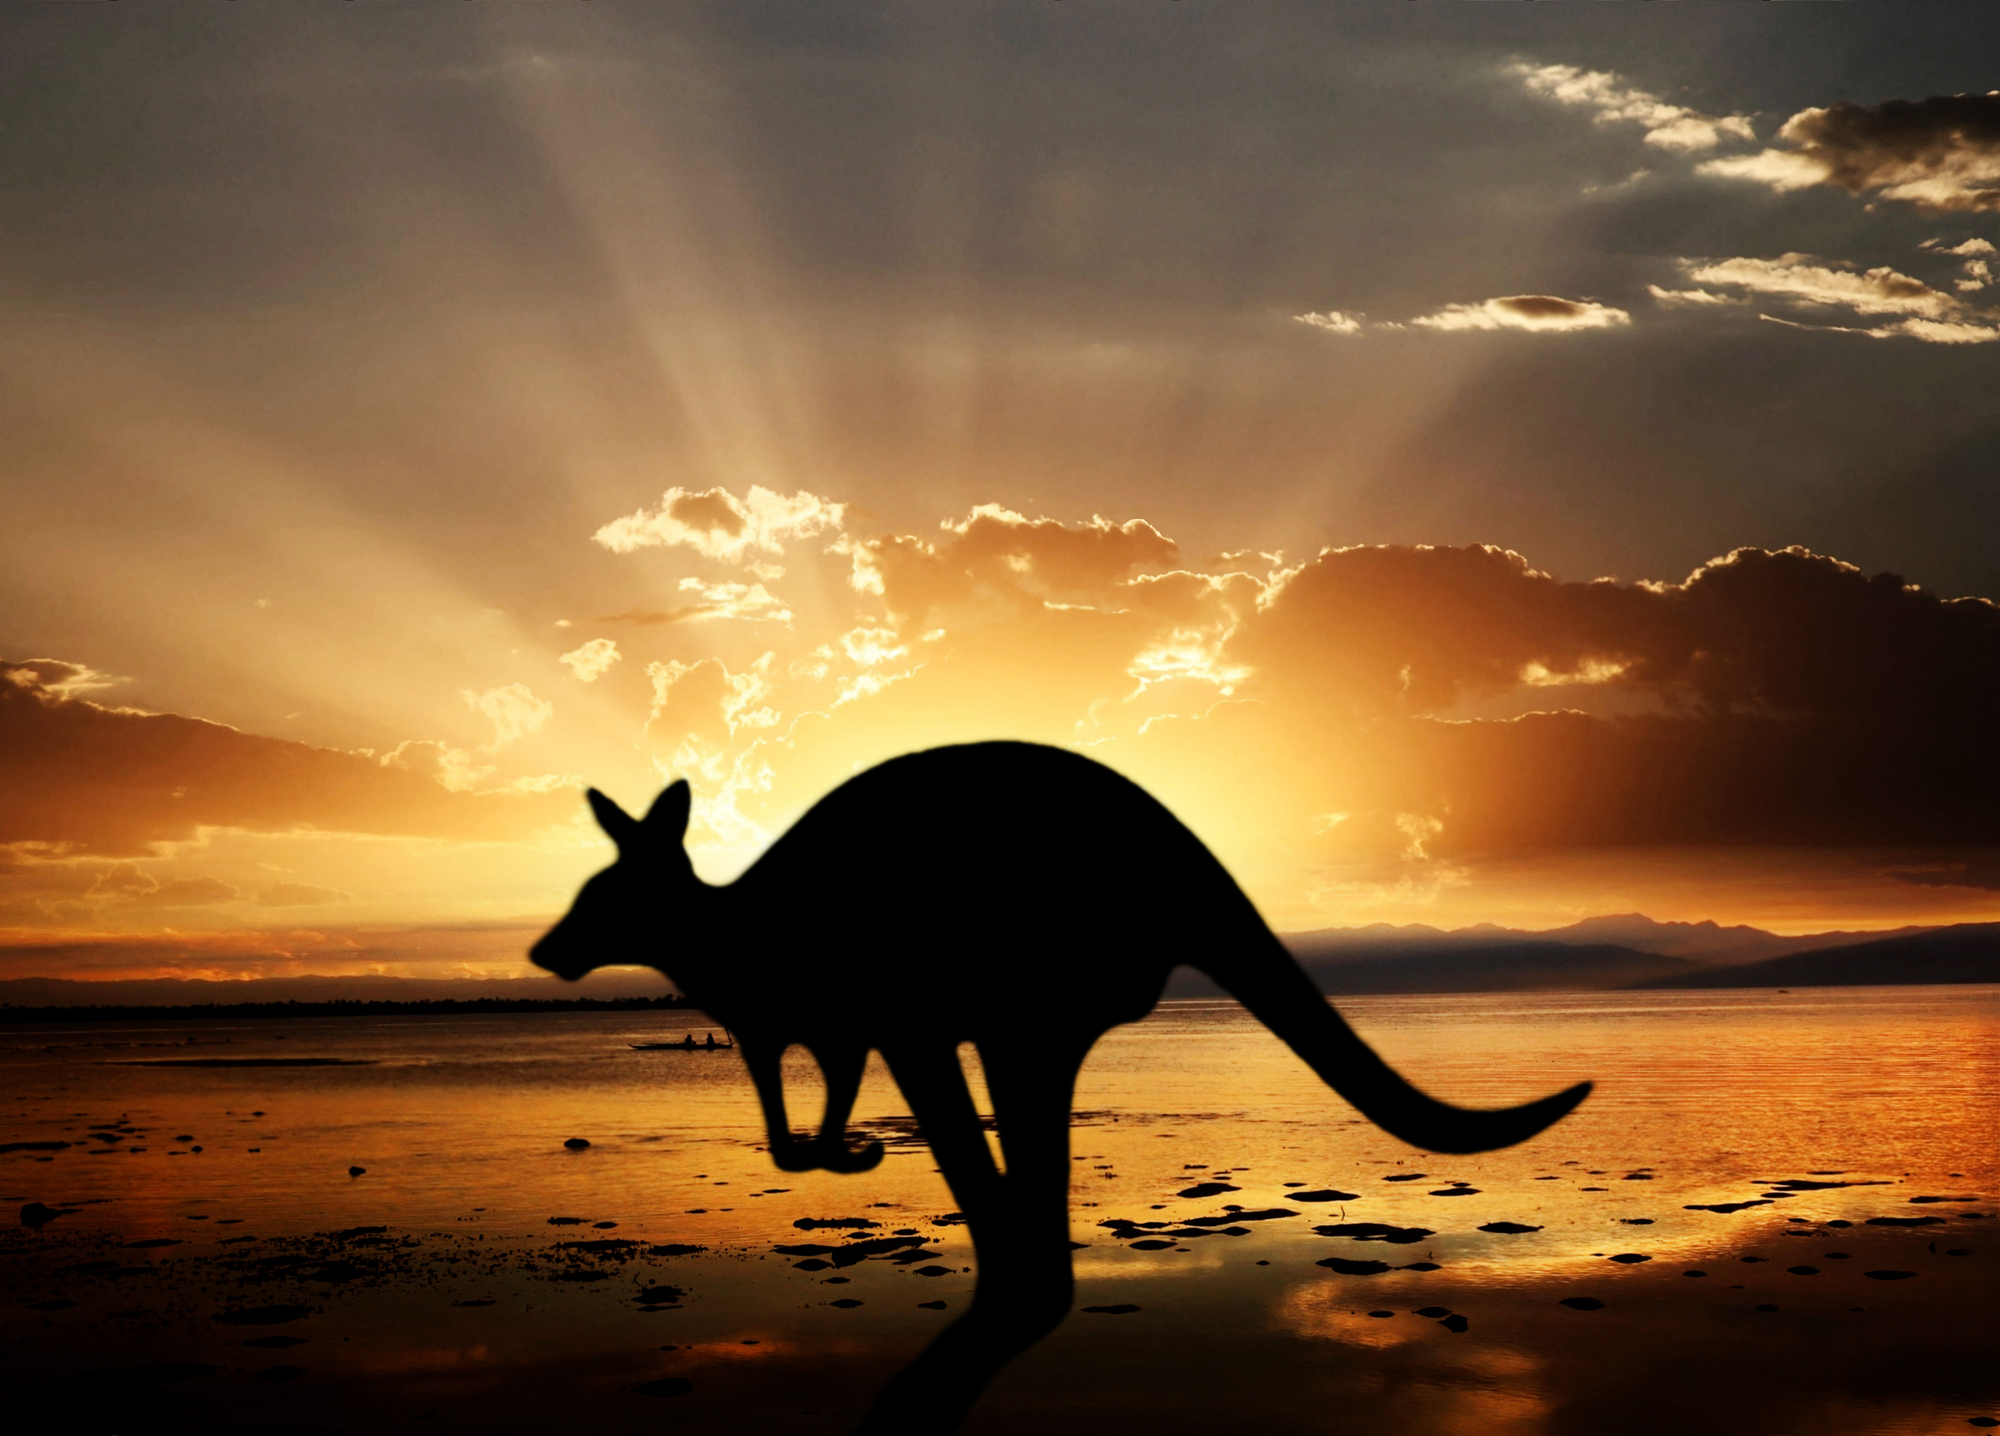 Courant avril, Australie Tours renseignera les agences de voyage sur la destination Australie à travers des afterworks - Depositphotos, auteur idizimage